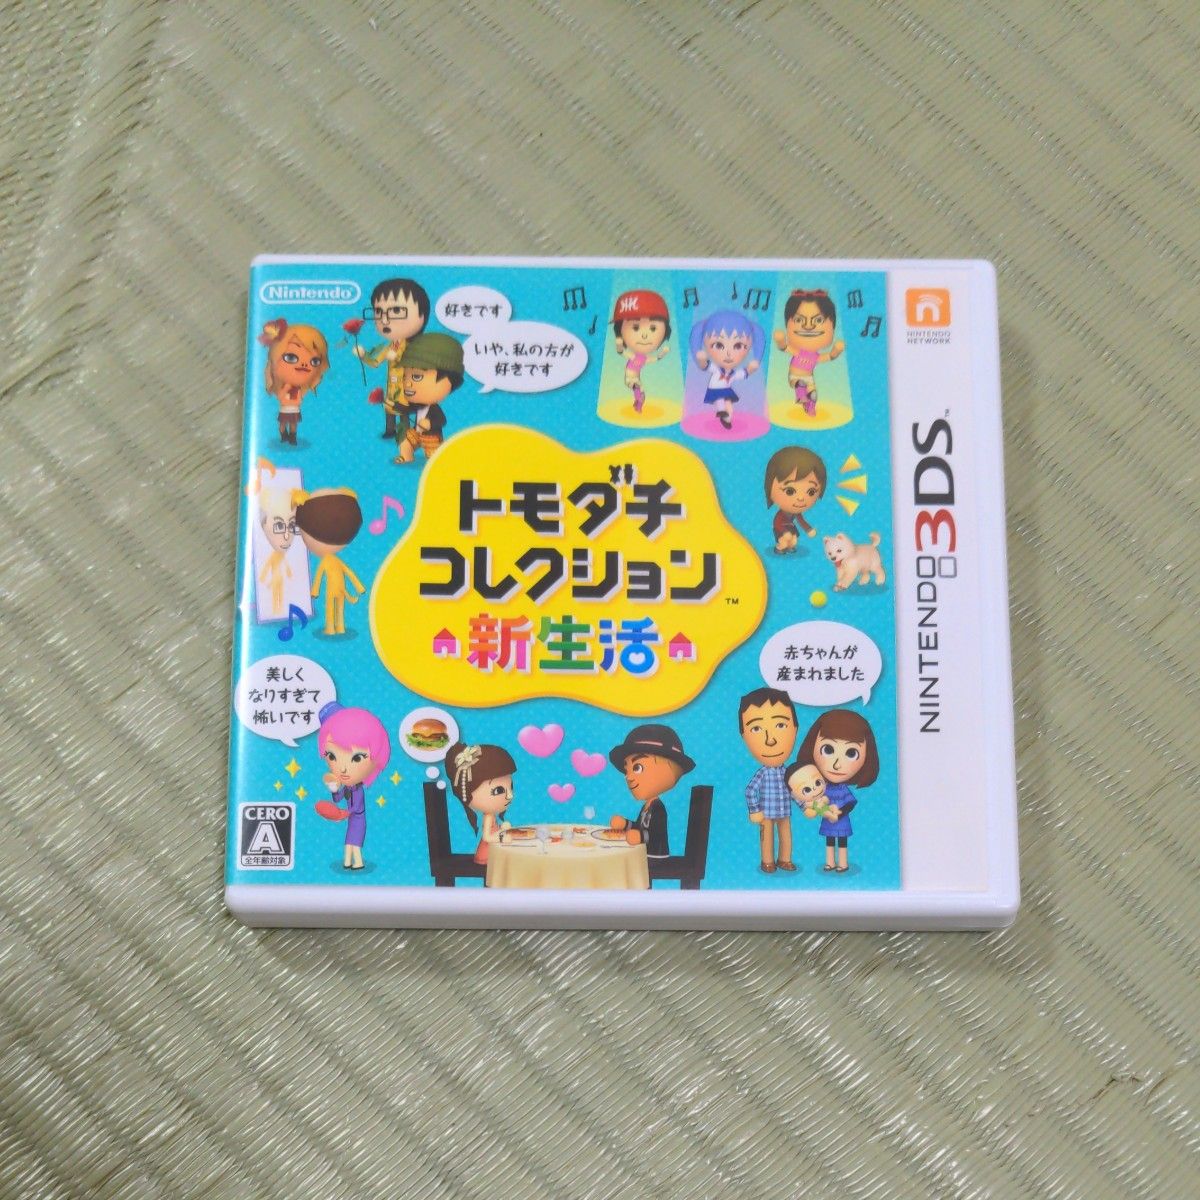 トモダチコレクション 新生活 3DS